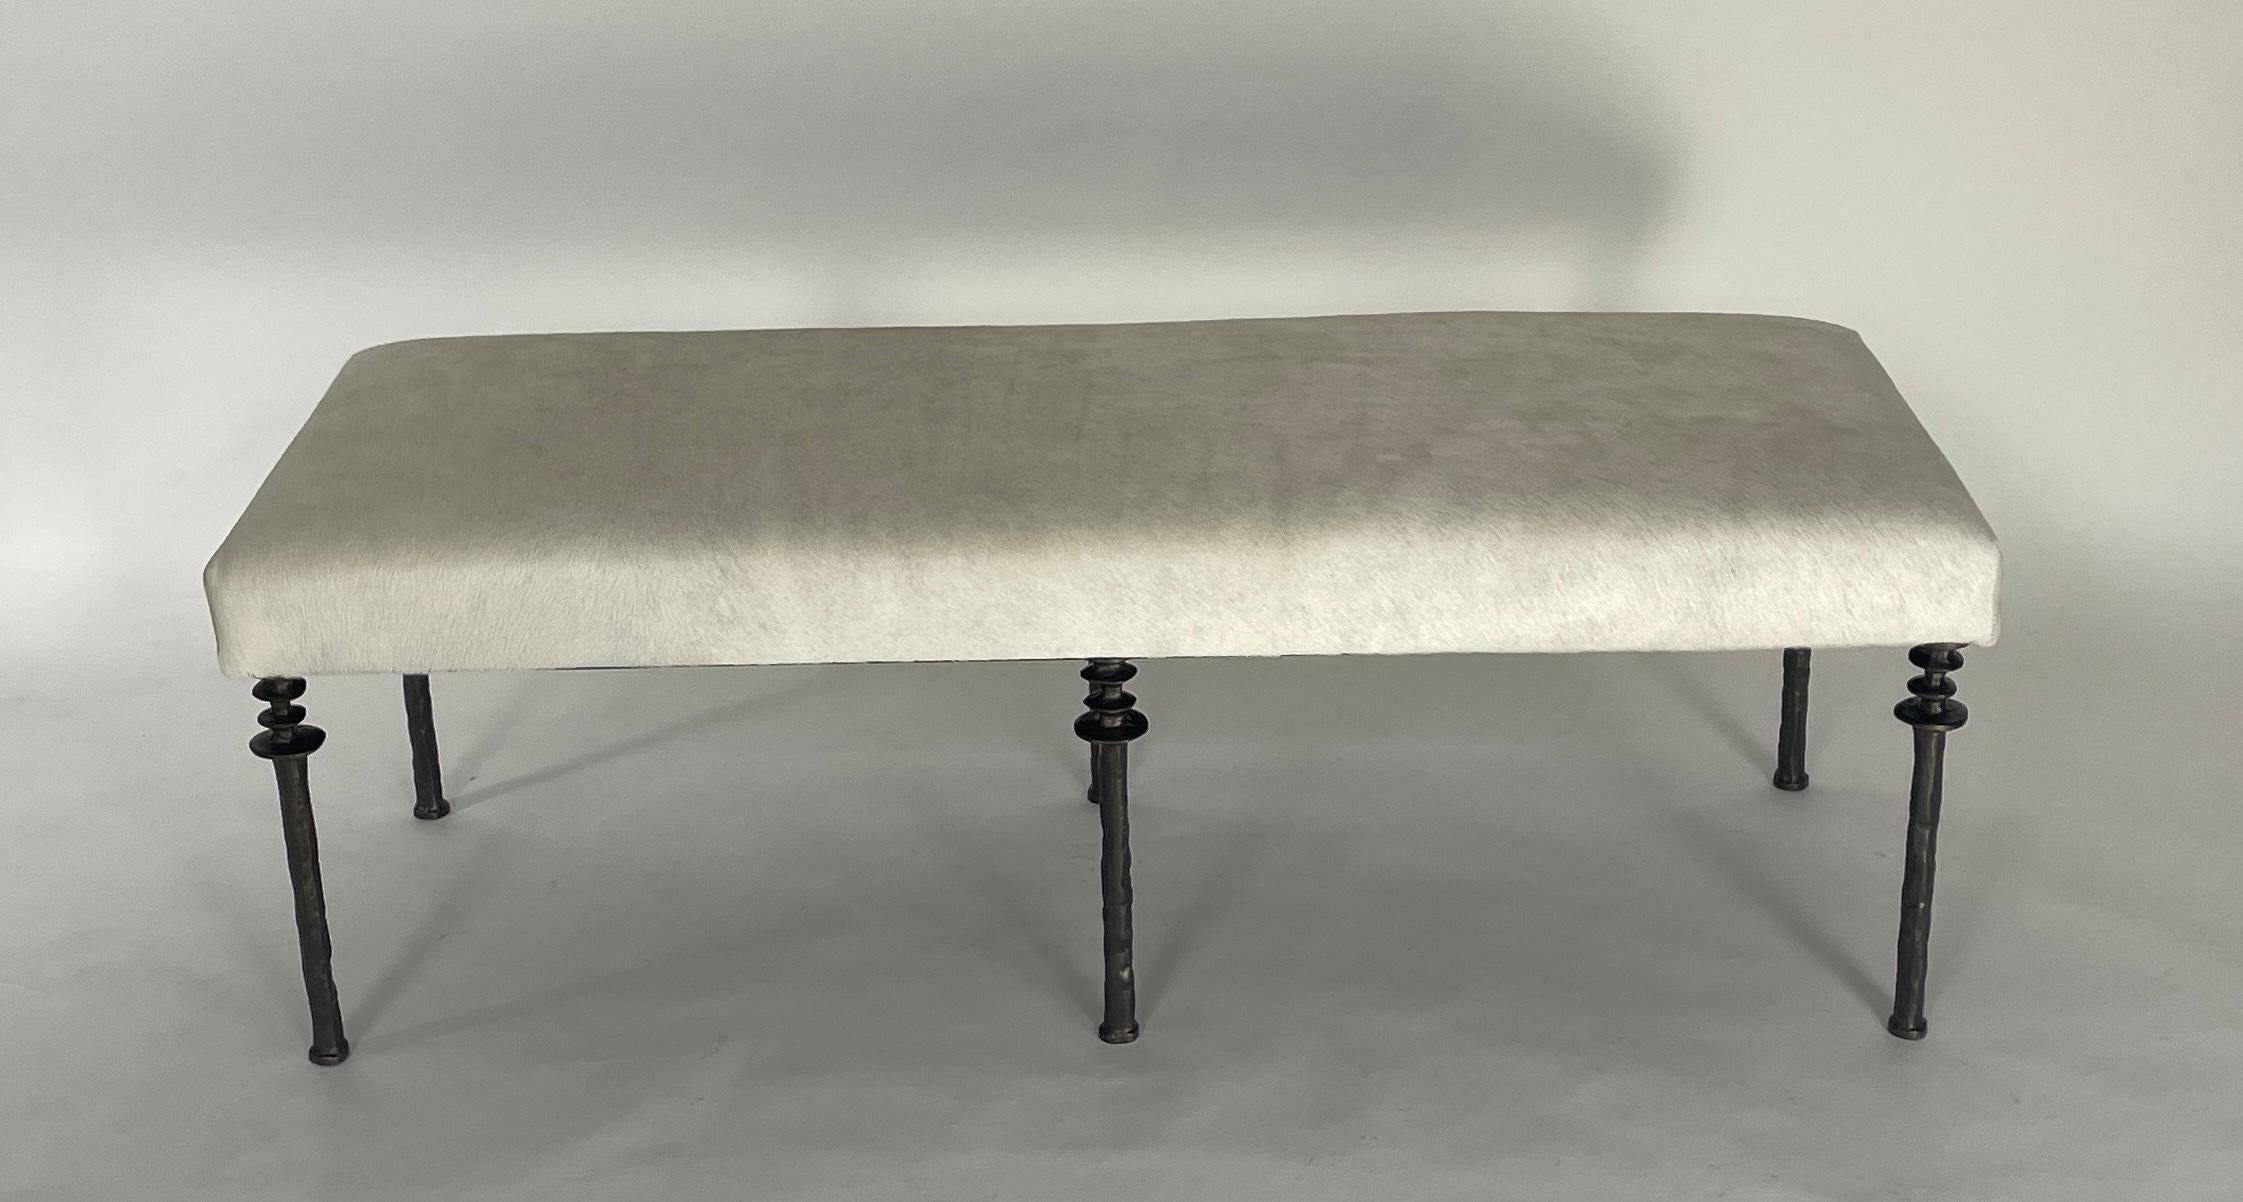 Diese von Diego Giacometti inspirierte Bank ist ideal für diejenigen, die auf der Suche nach einzigartigen Sitzmöbeln sind. Die Beine aus Bronzeguss verleihen ihnen einen wirklich organischen Touch. Das Kissen wurde mit einem cremefarbenen Kuhfell